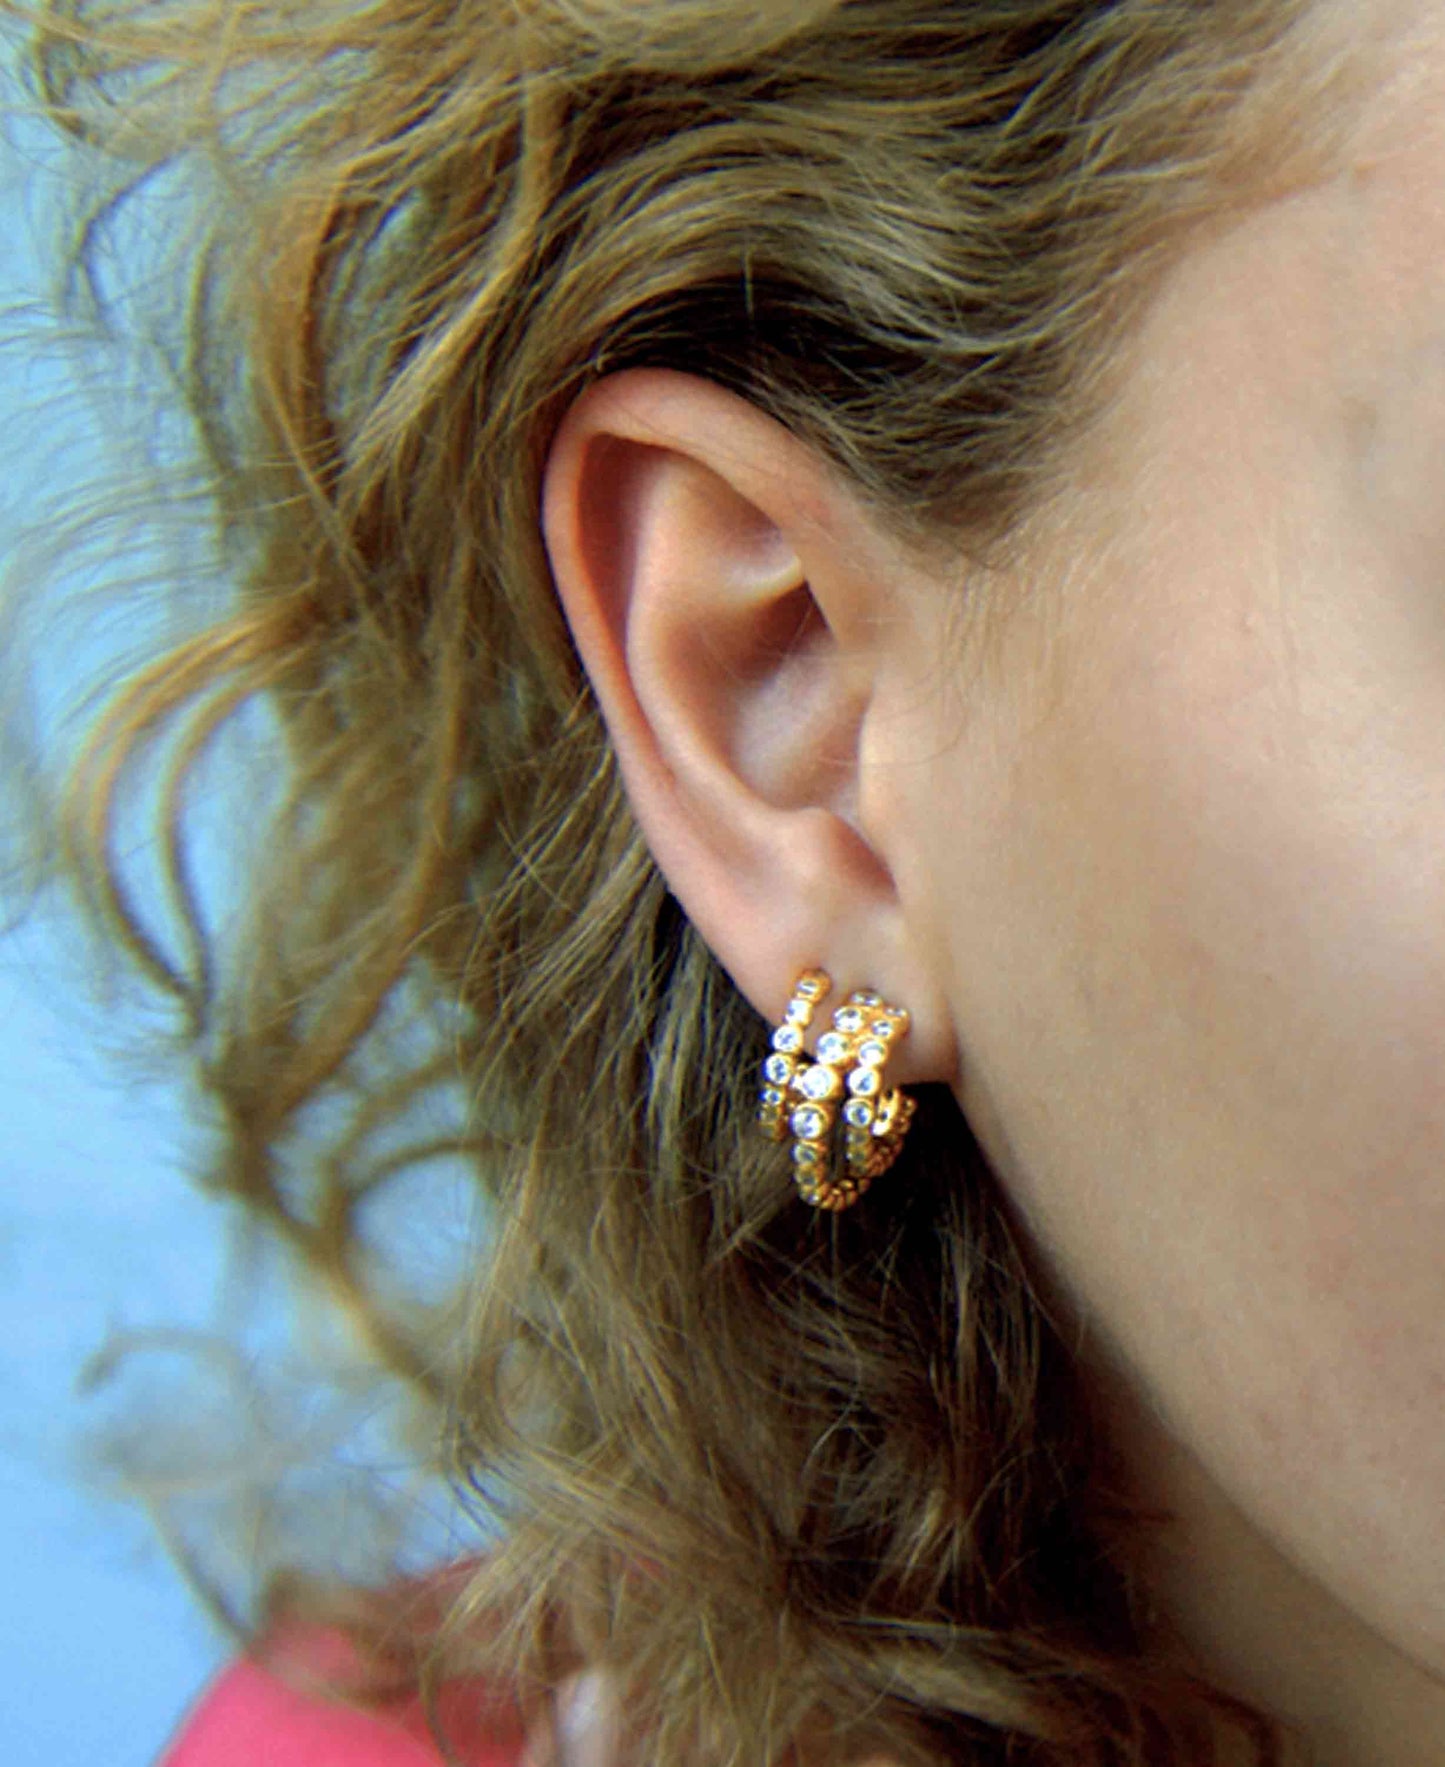 Amara mini earrings